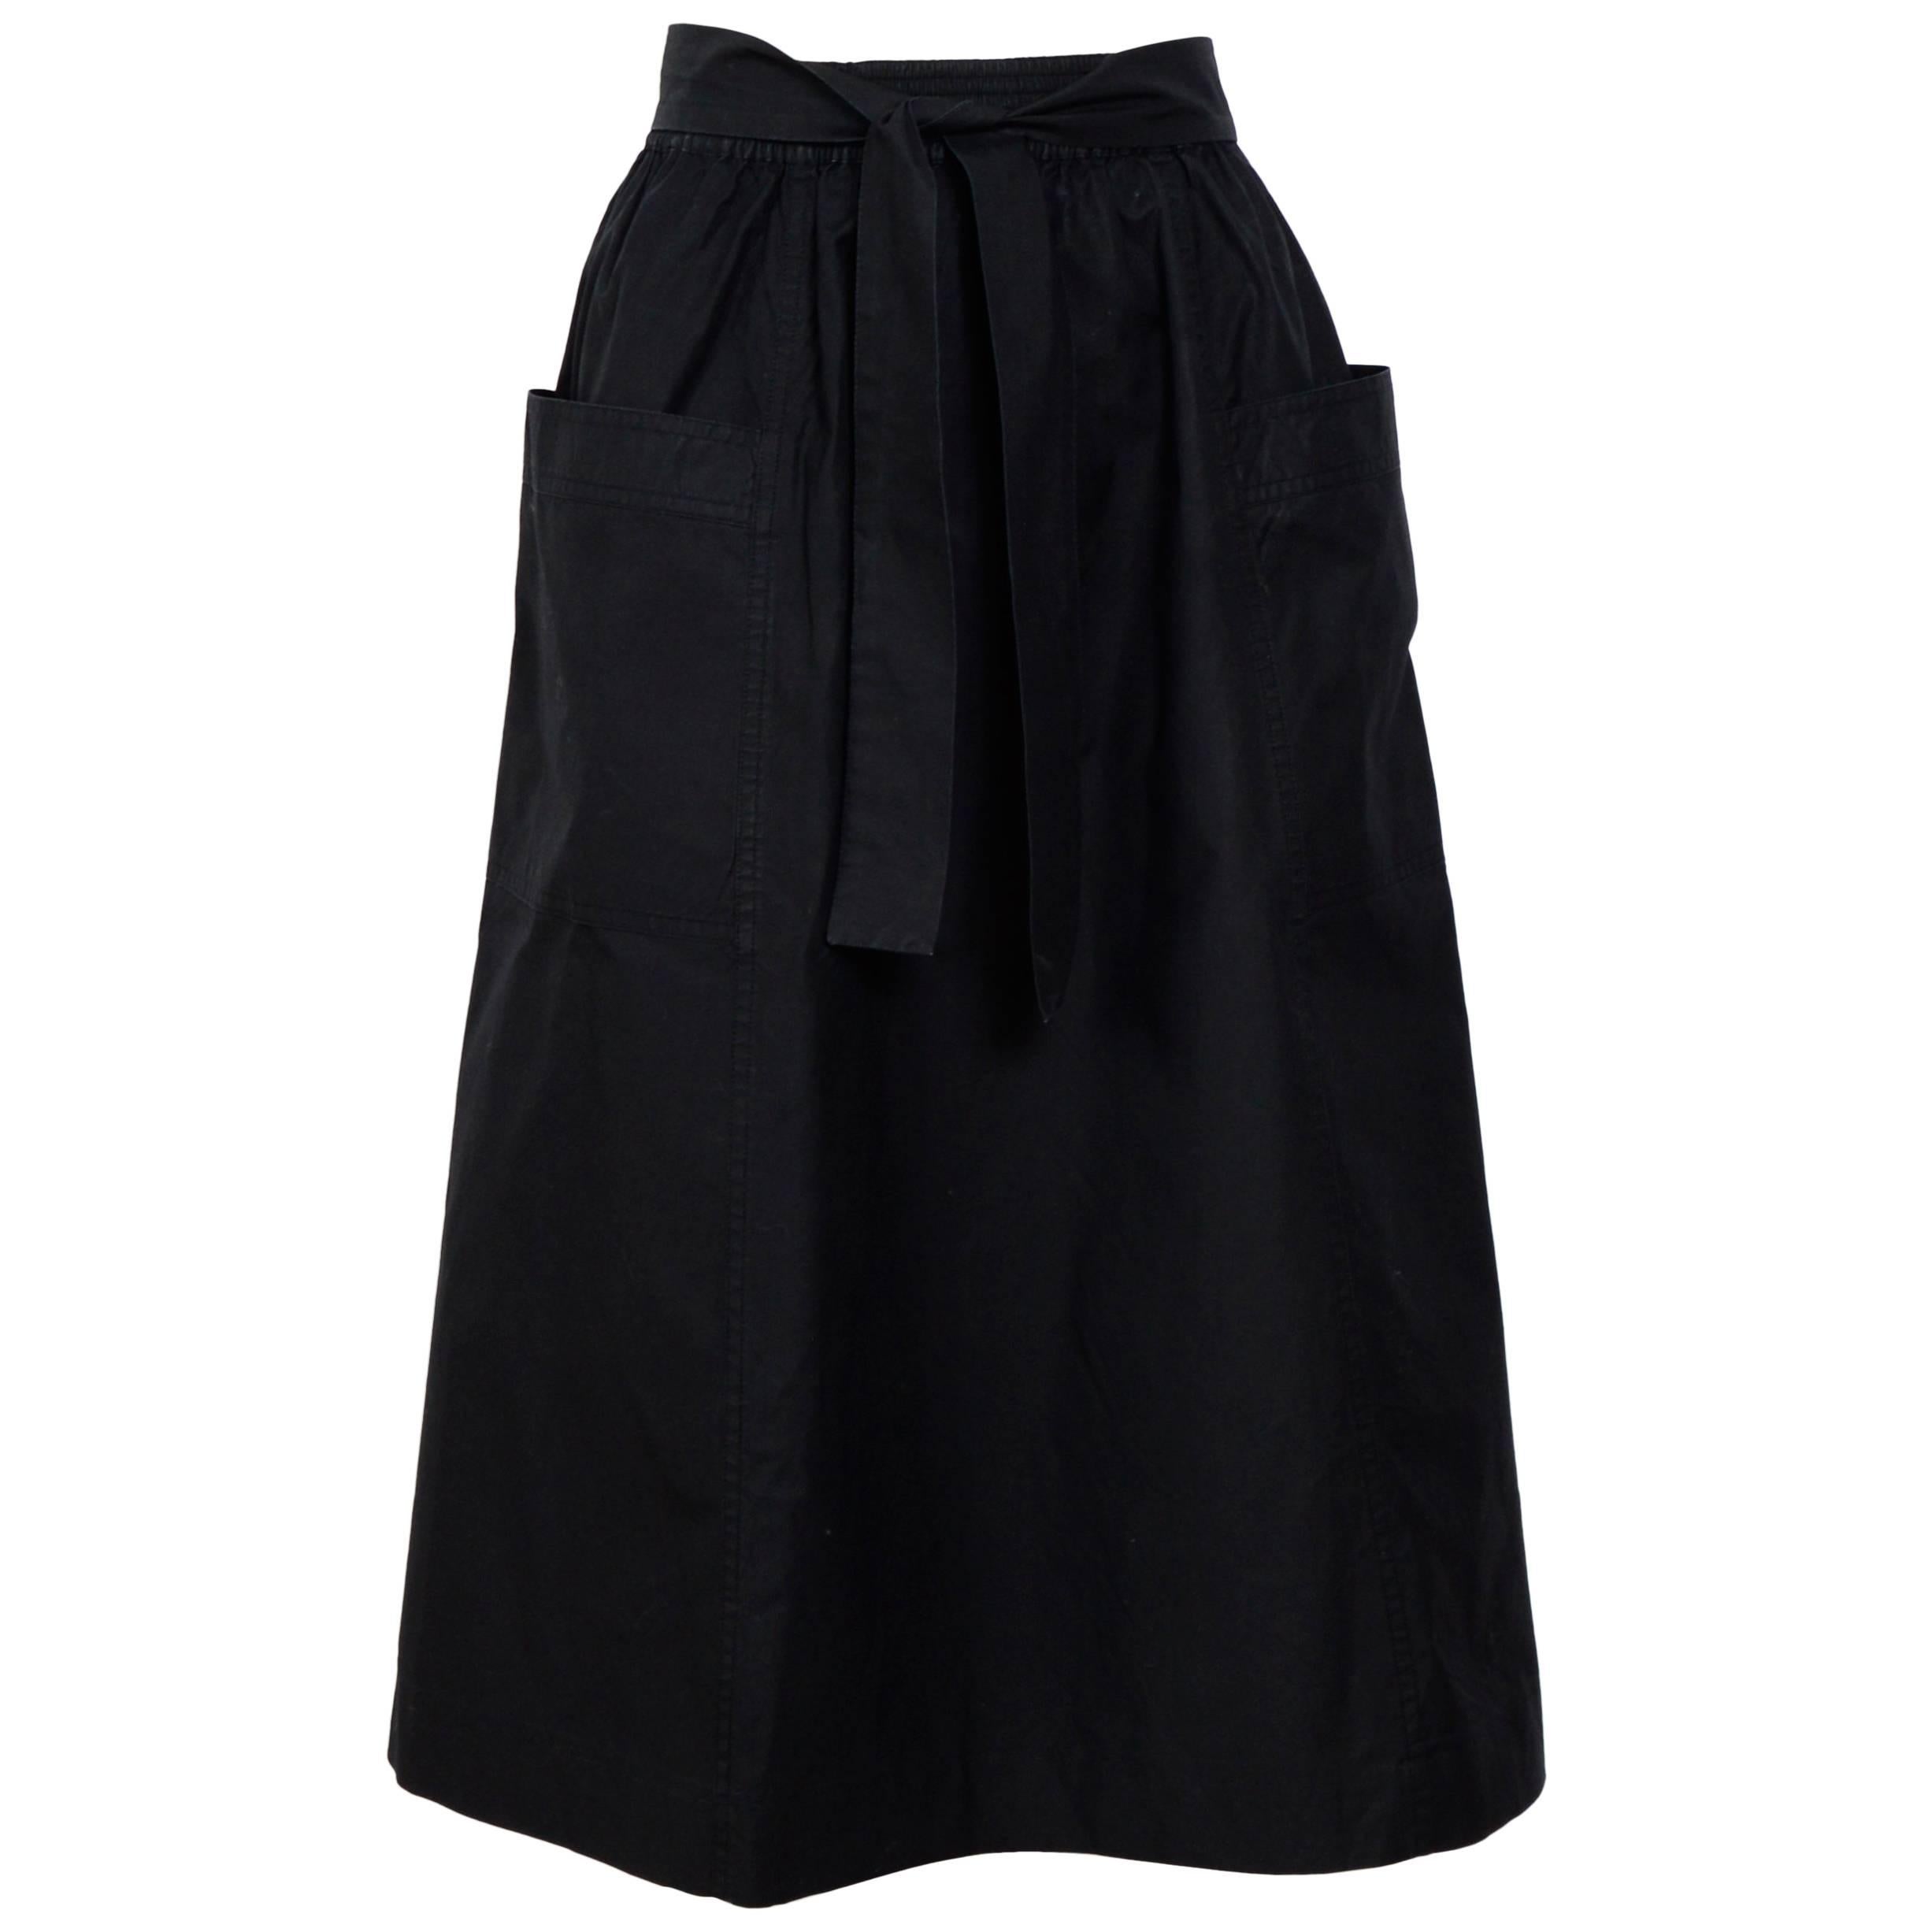 Yves Saint Laurent cotton black skirt, 1970's